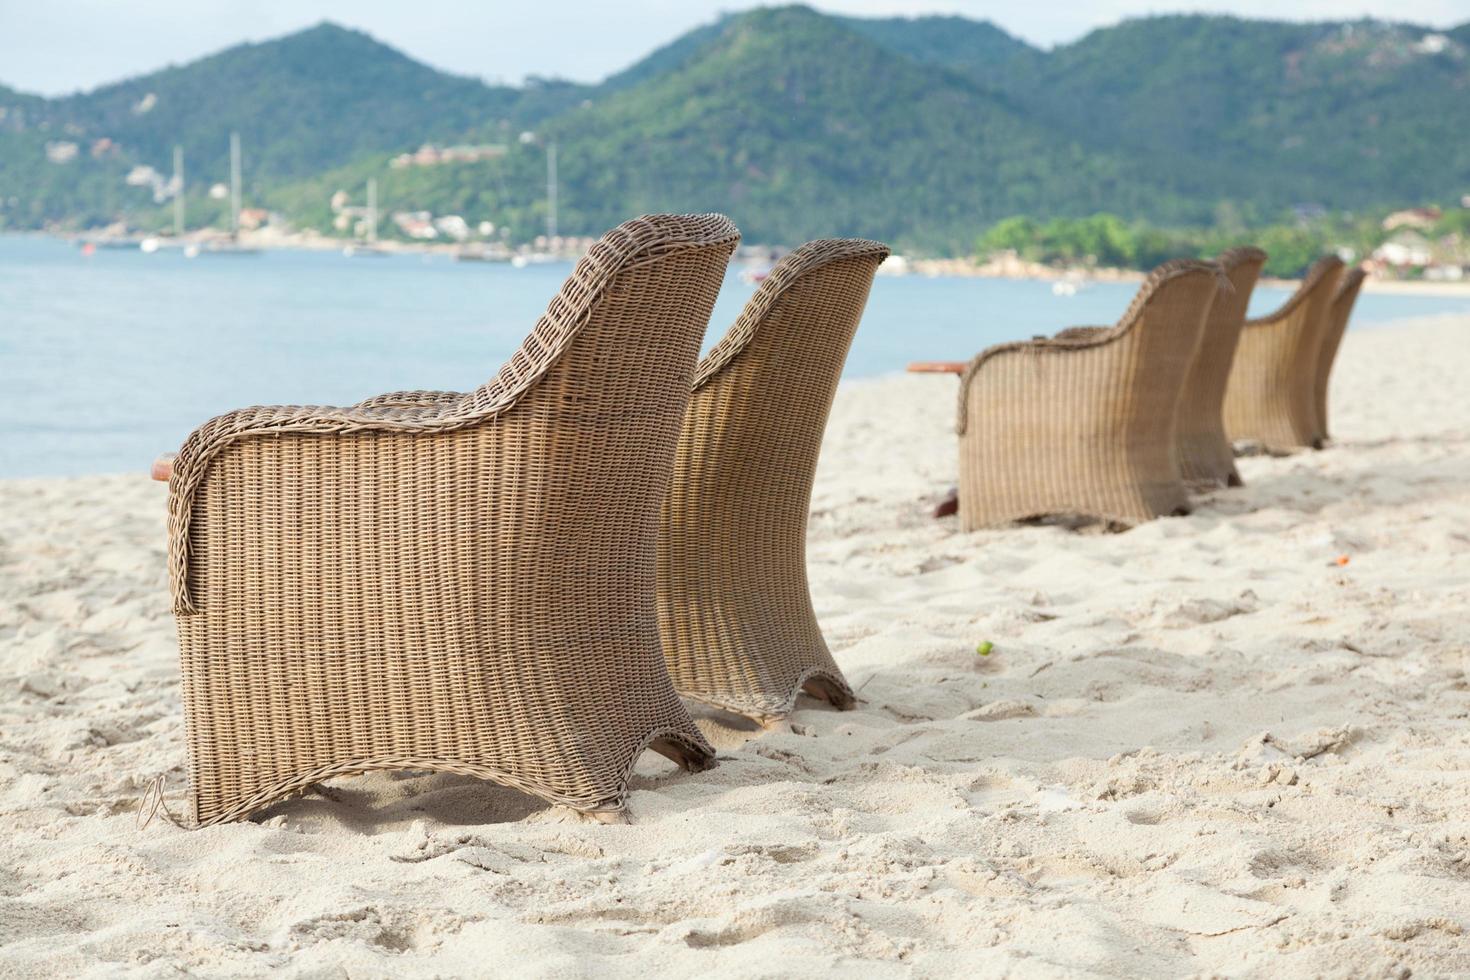 chaises sur la plage en thaïlande photo